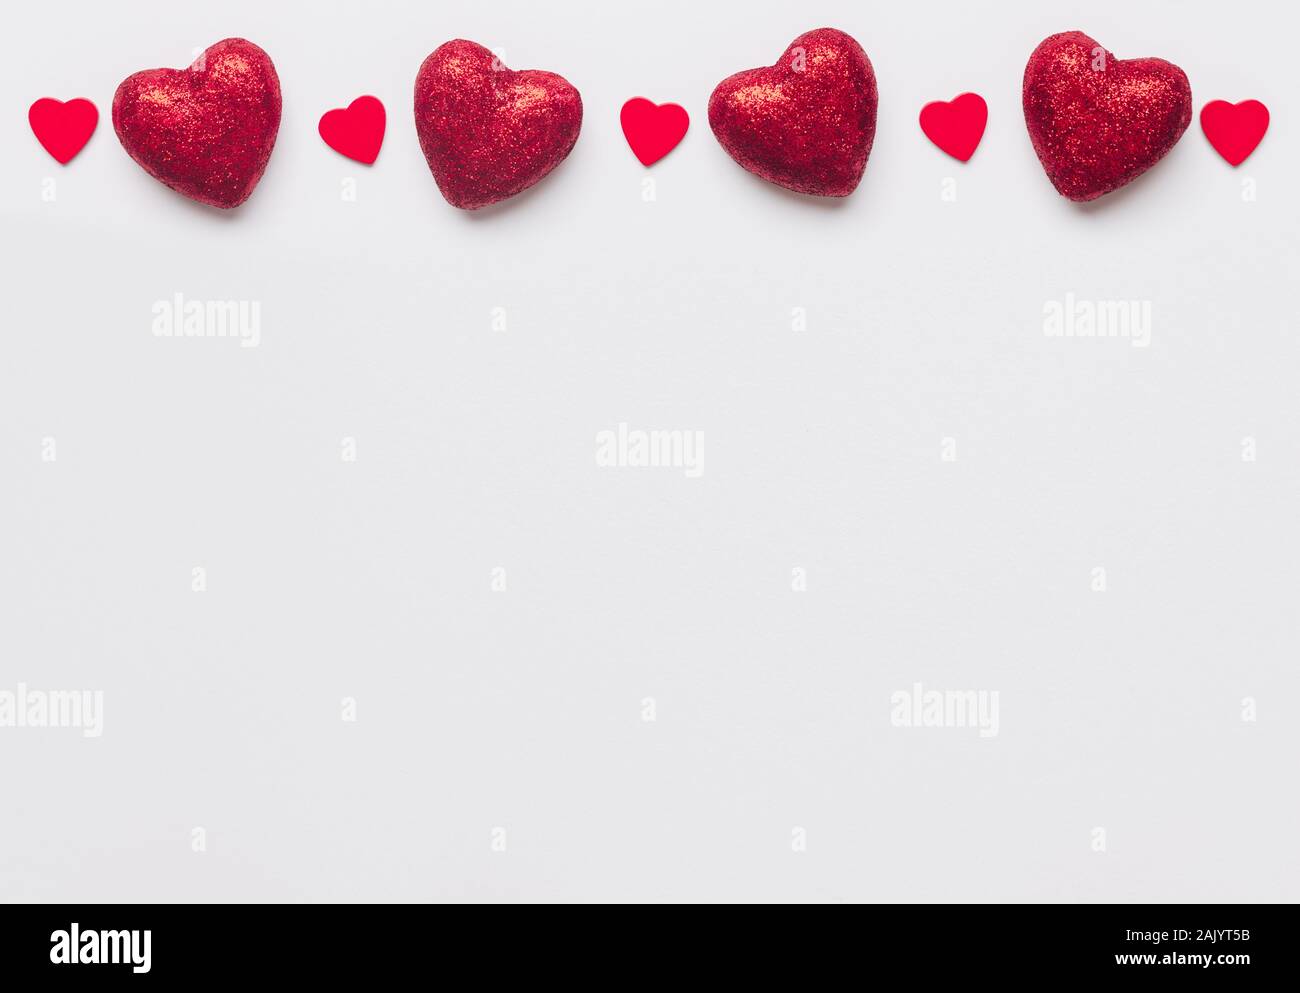 Foto di stock di grandi e piccoli cuoricini rossi su sfondo bianco. Cuori  al top con uno spazio per il testo Foto stock - Alamy